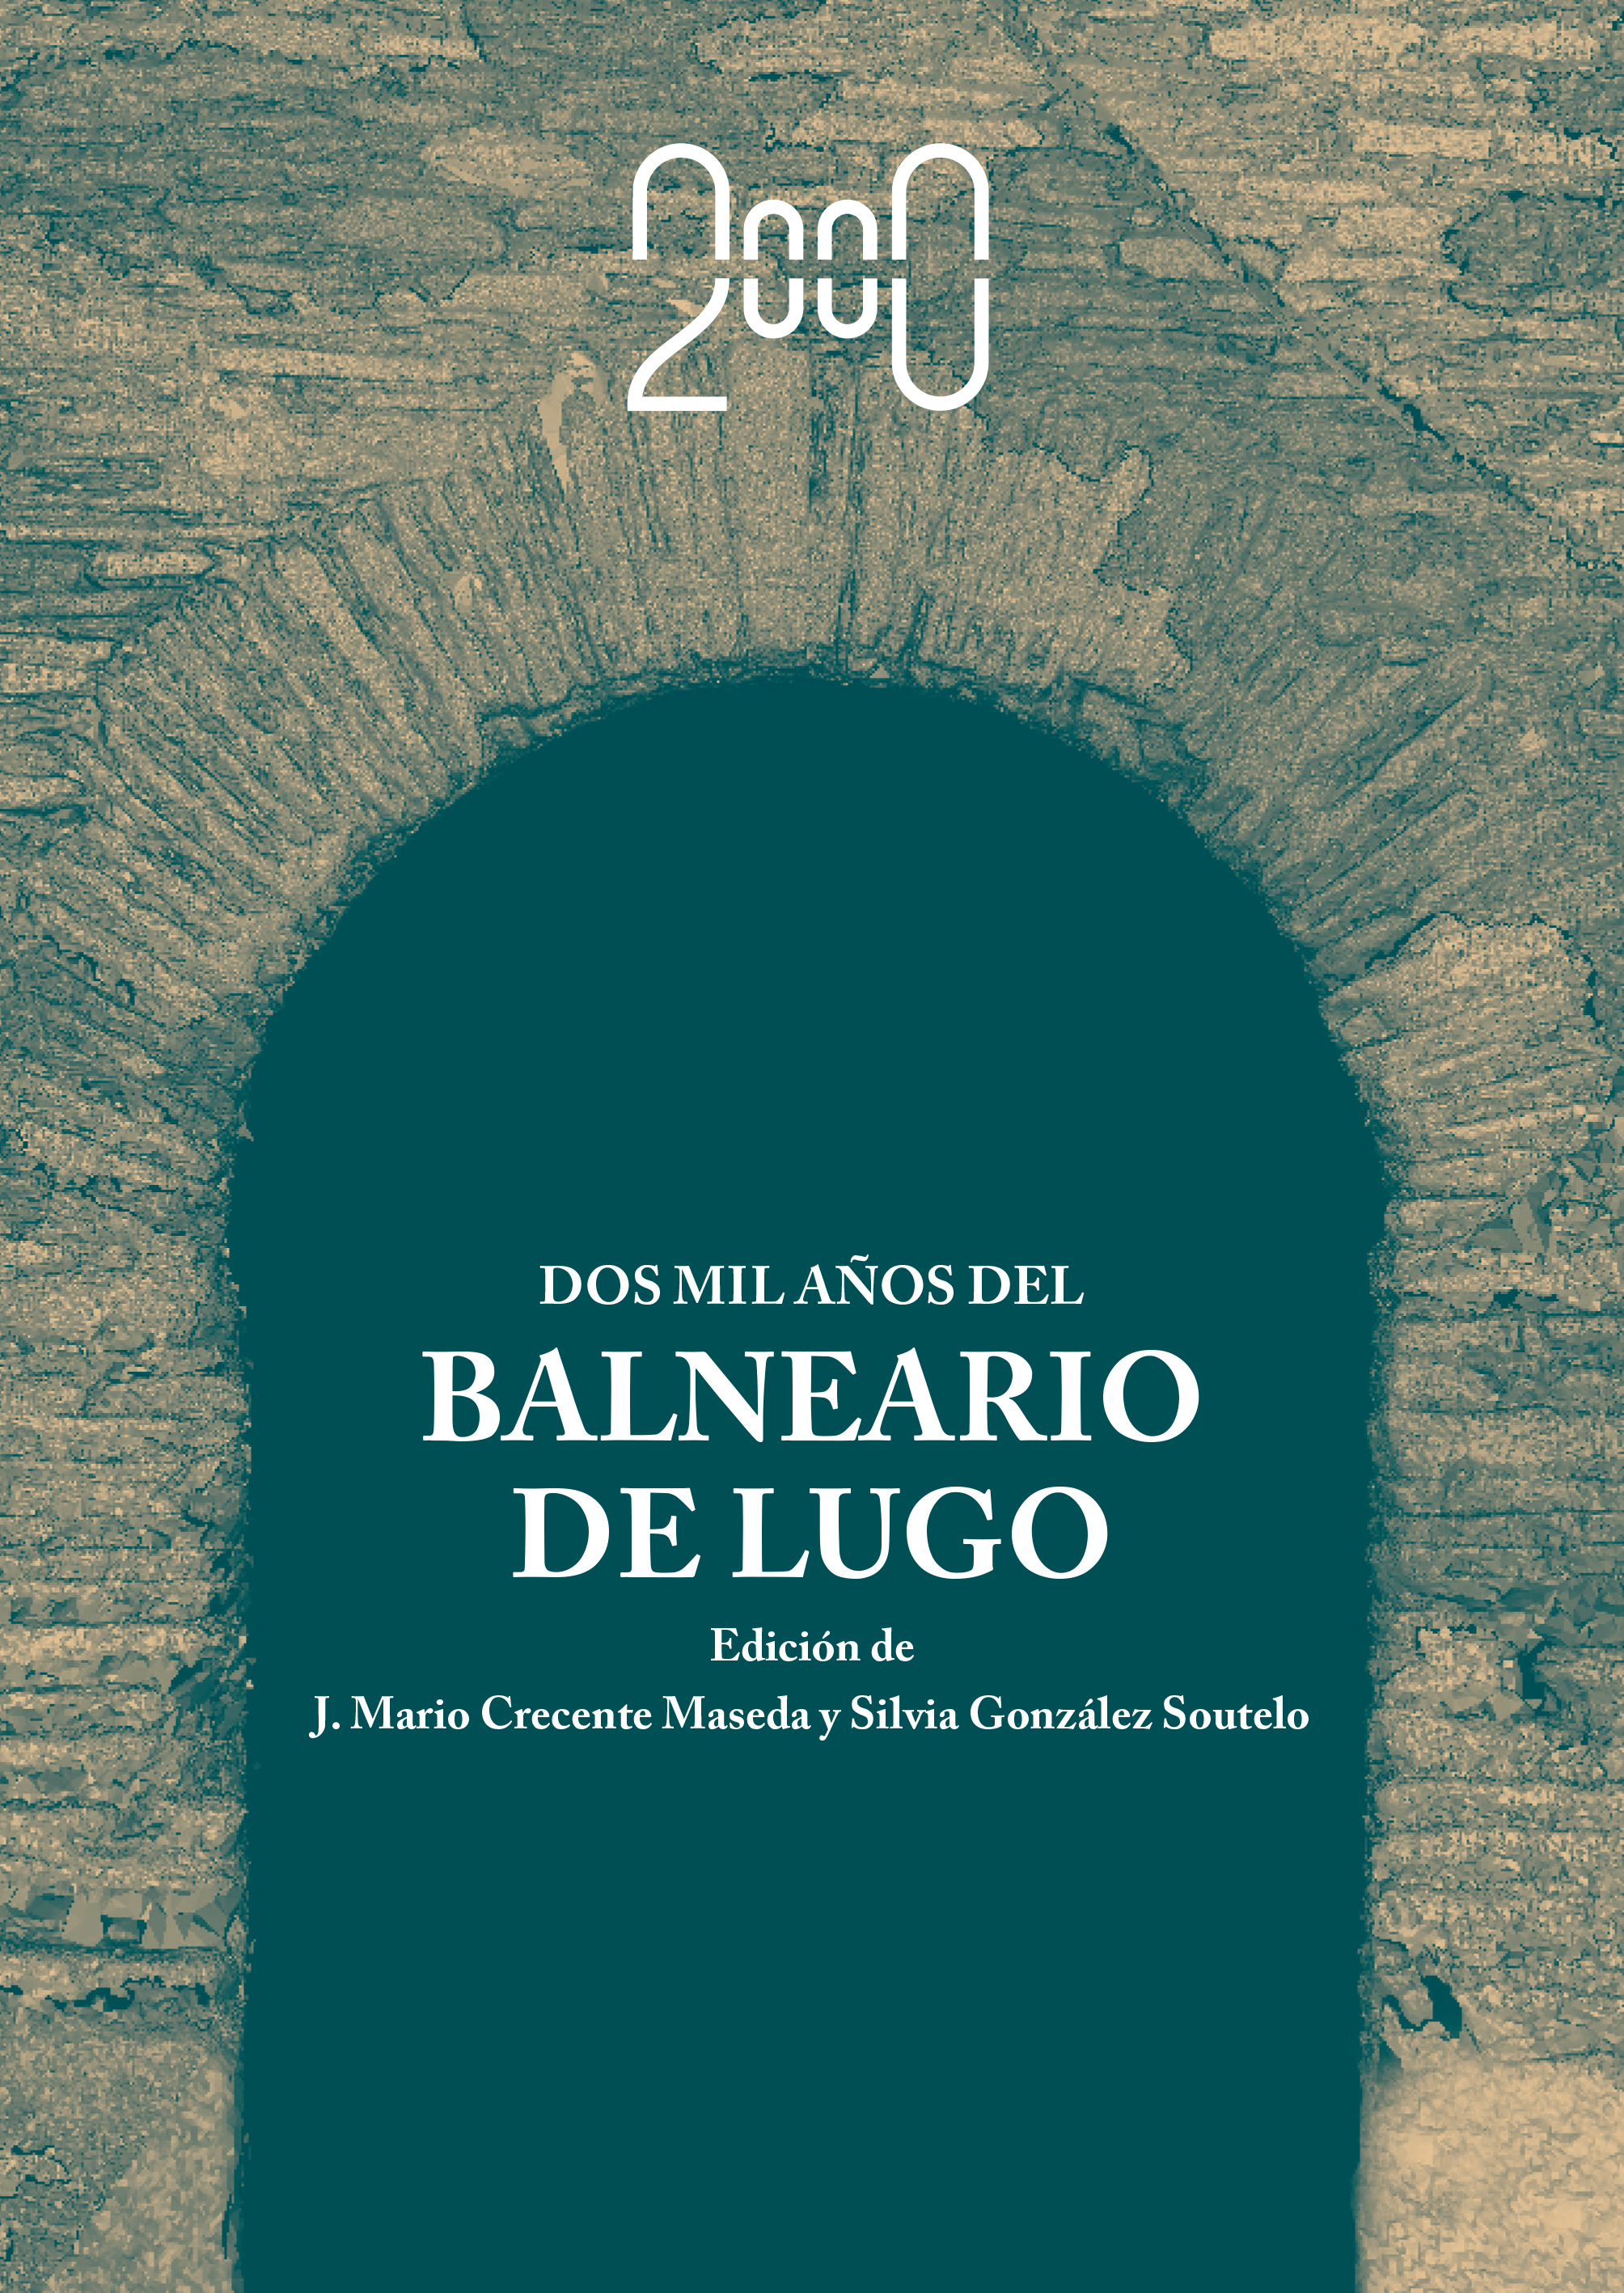 Dous mil anos do Balneario de Lugo